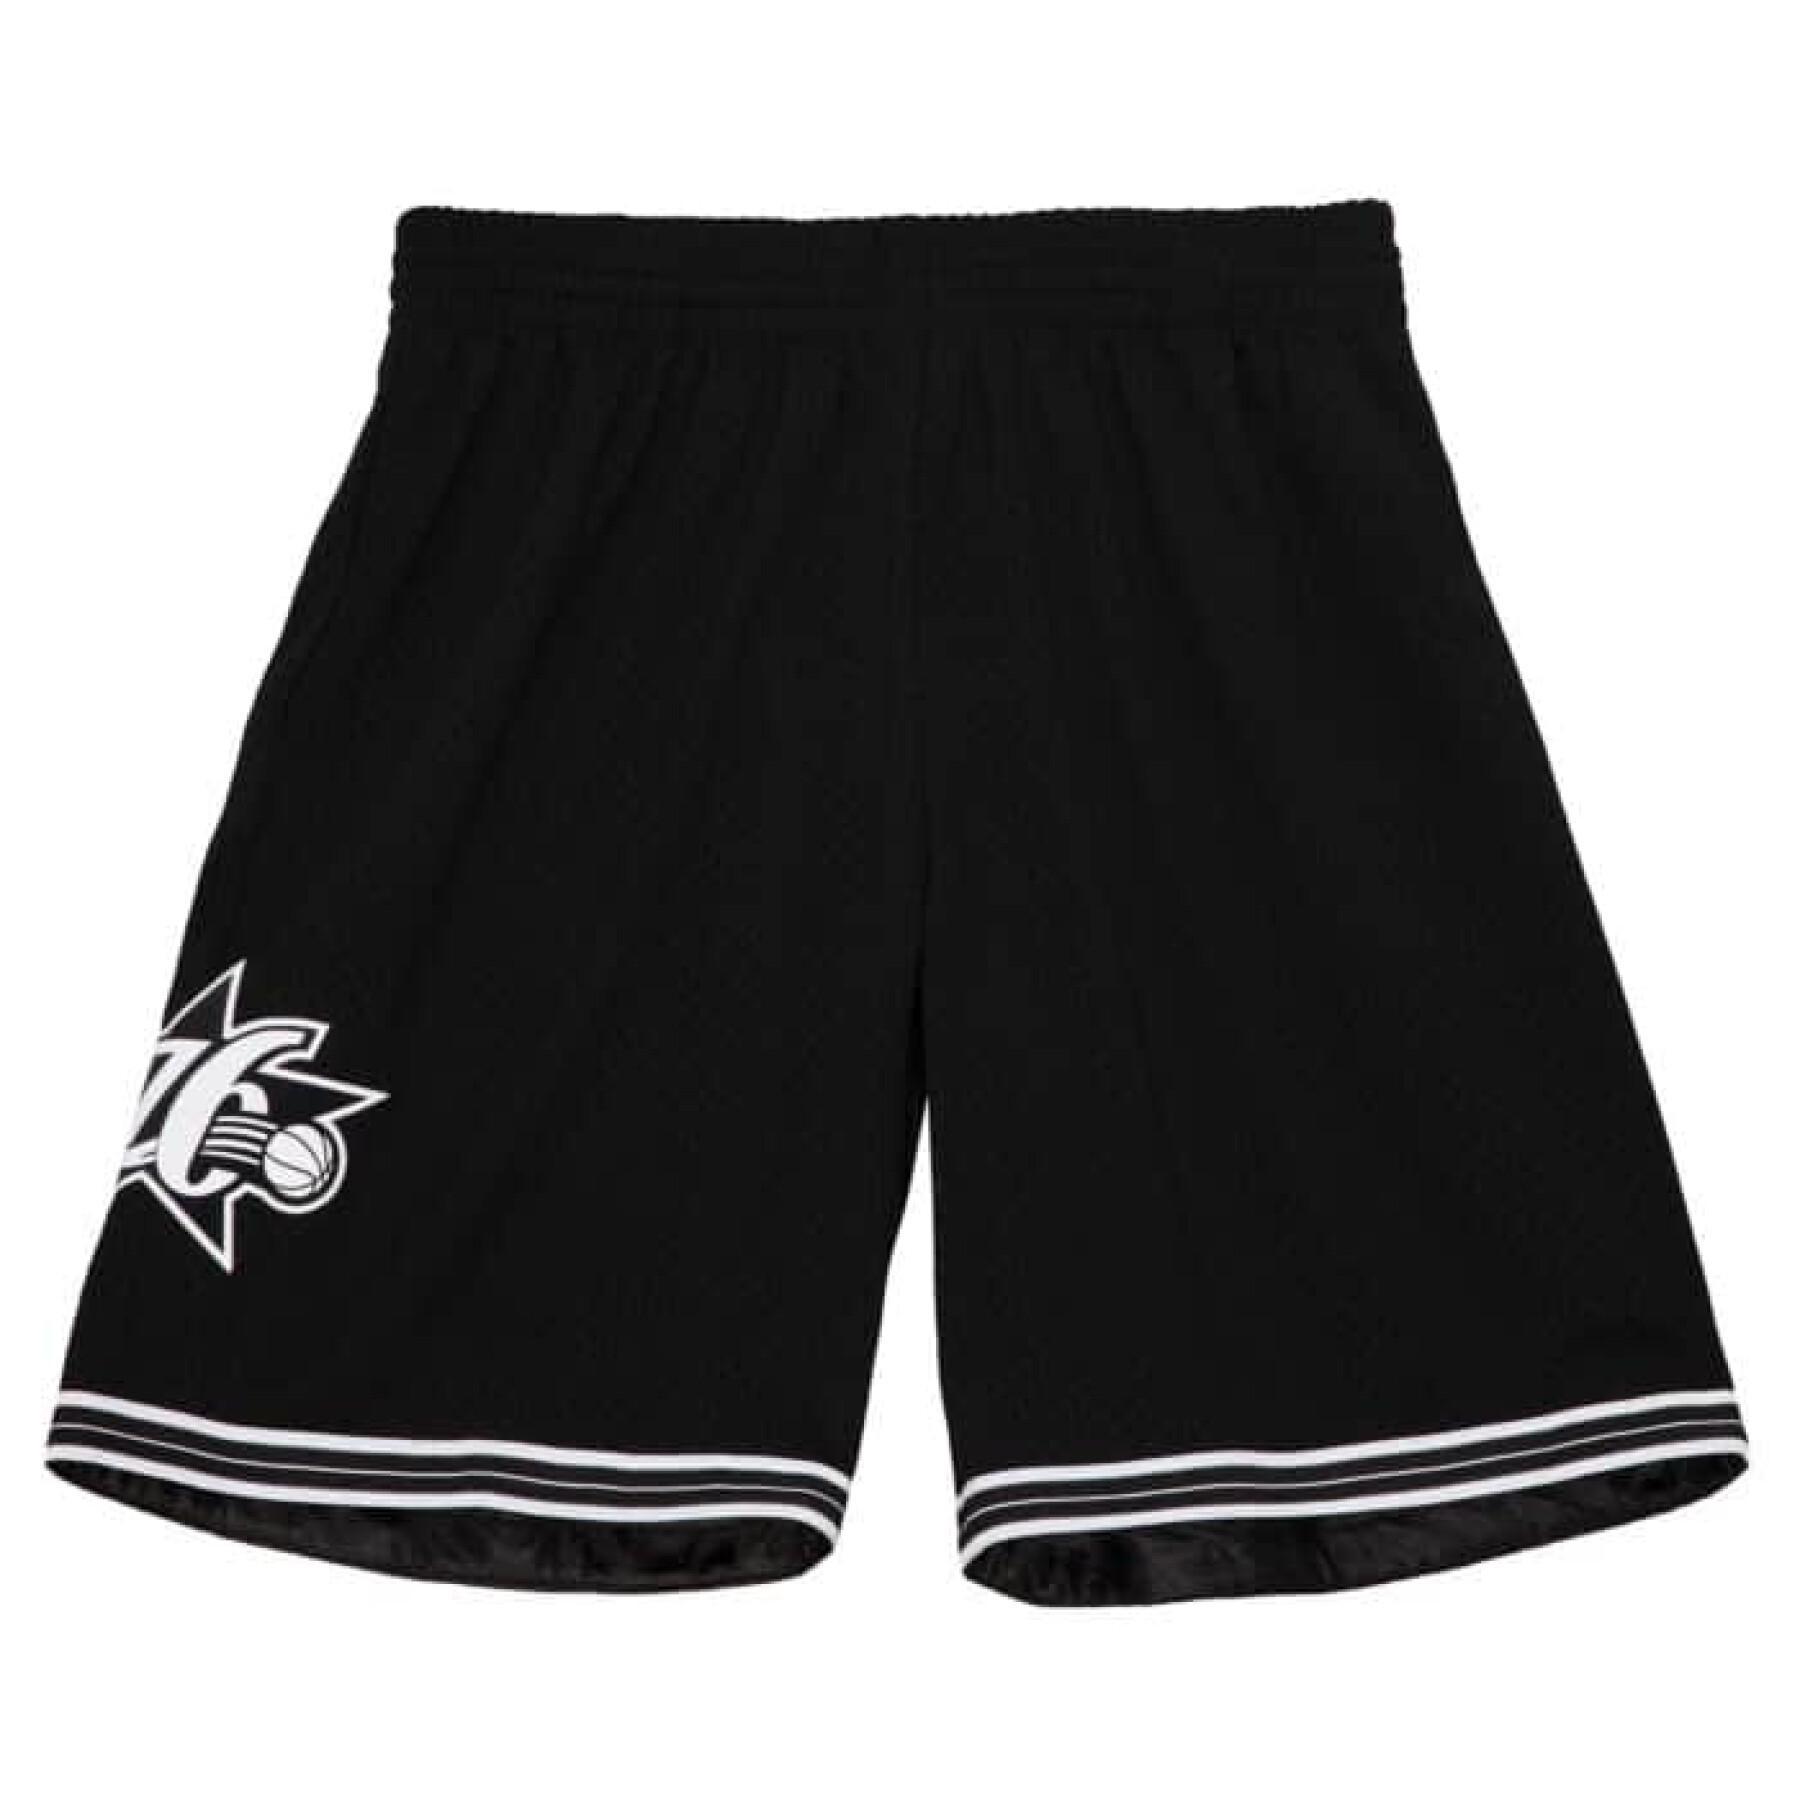 Pantalones cortos de los Philadelphia 76ers 2000-01 blanco logo swingman 